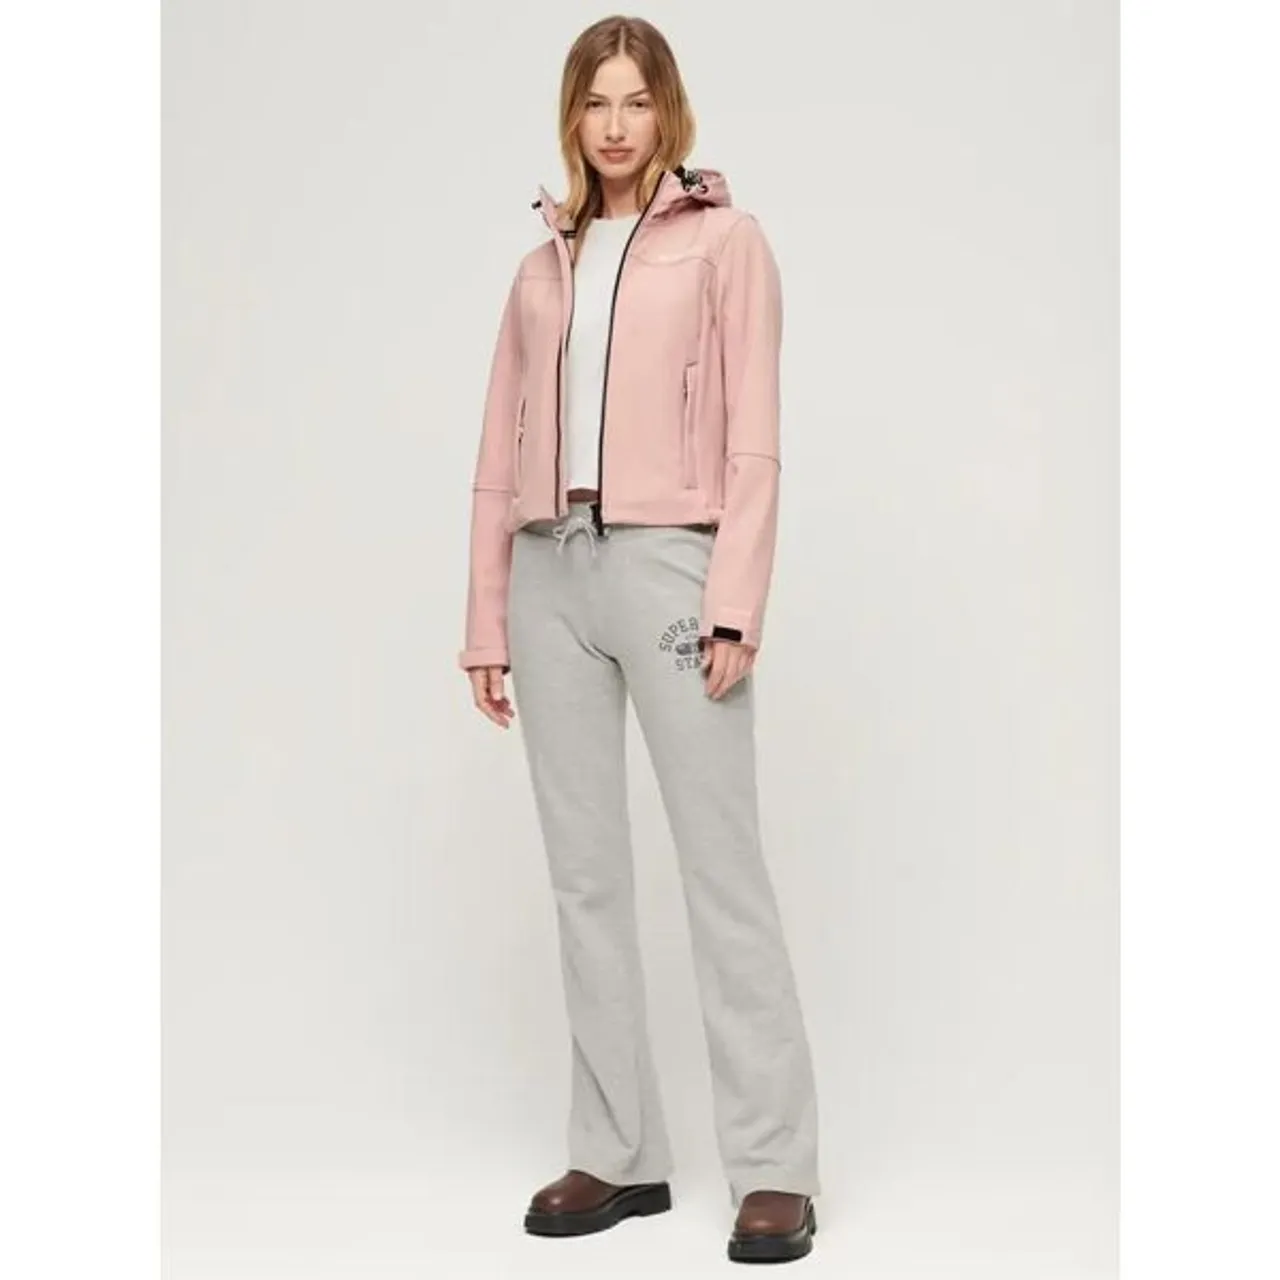 Superdry Hooded Soft Shell Trekker Jacket, Vintage Blush Pink - Vintage Blush Pink - Female